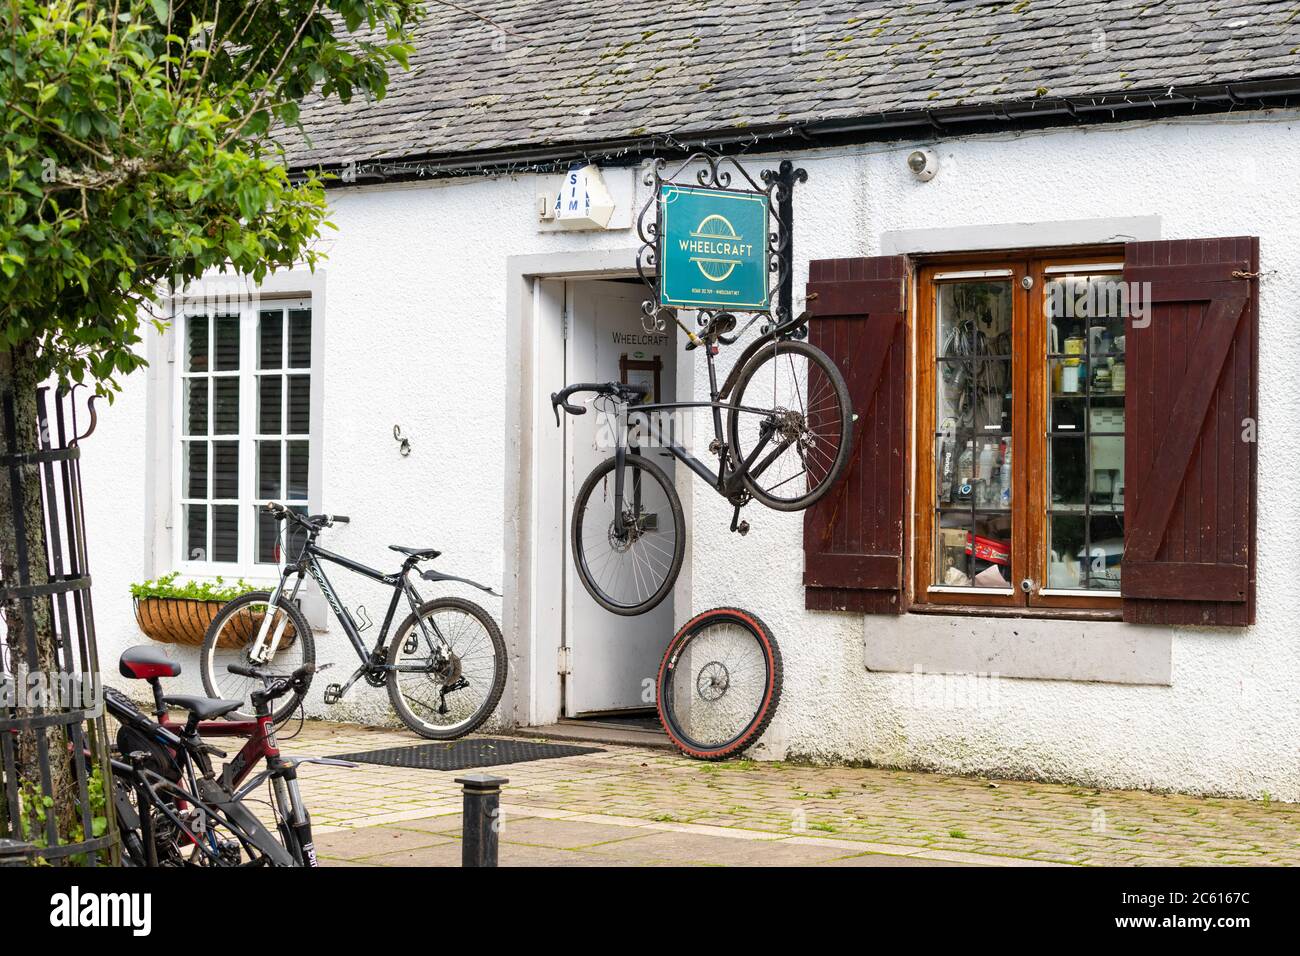 Wheelcraft unabhängiger traditioneller Fahrradladen, der handgefertigte Fahrradräder und Fahrradreparaturen anbietet, Clachan of Campsie, Campsie Glen, Schottland, UK Stockfoto